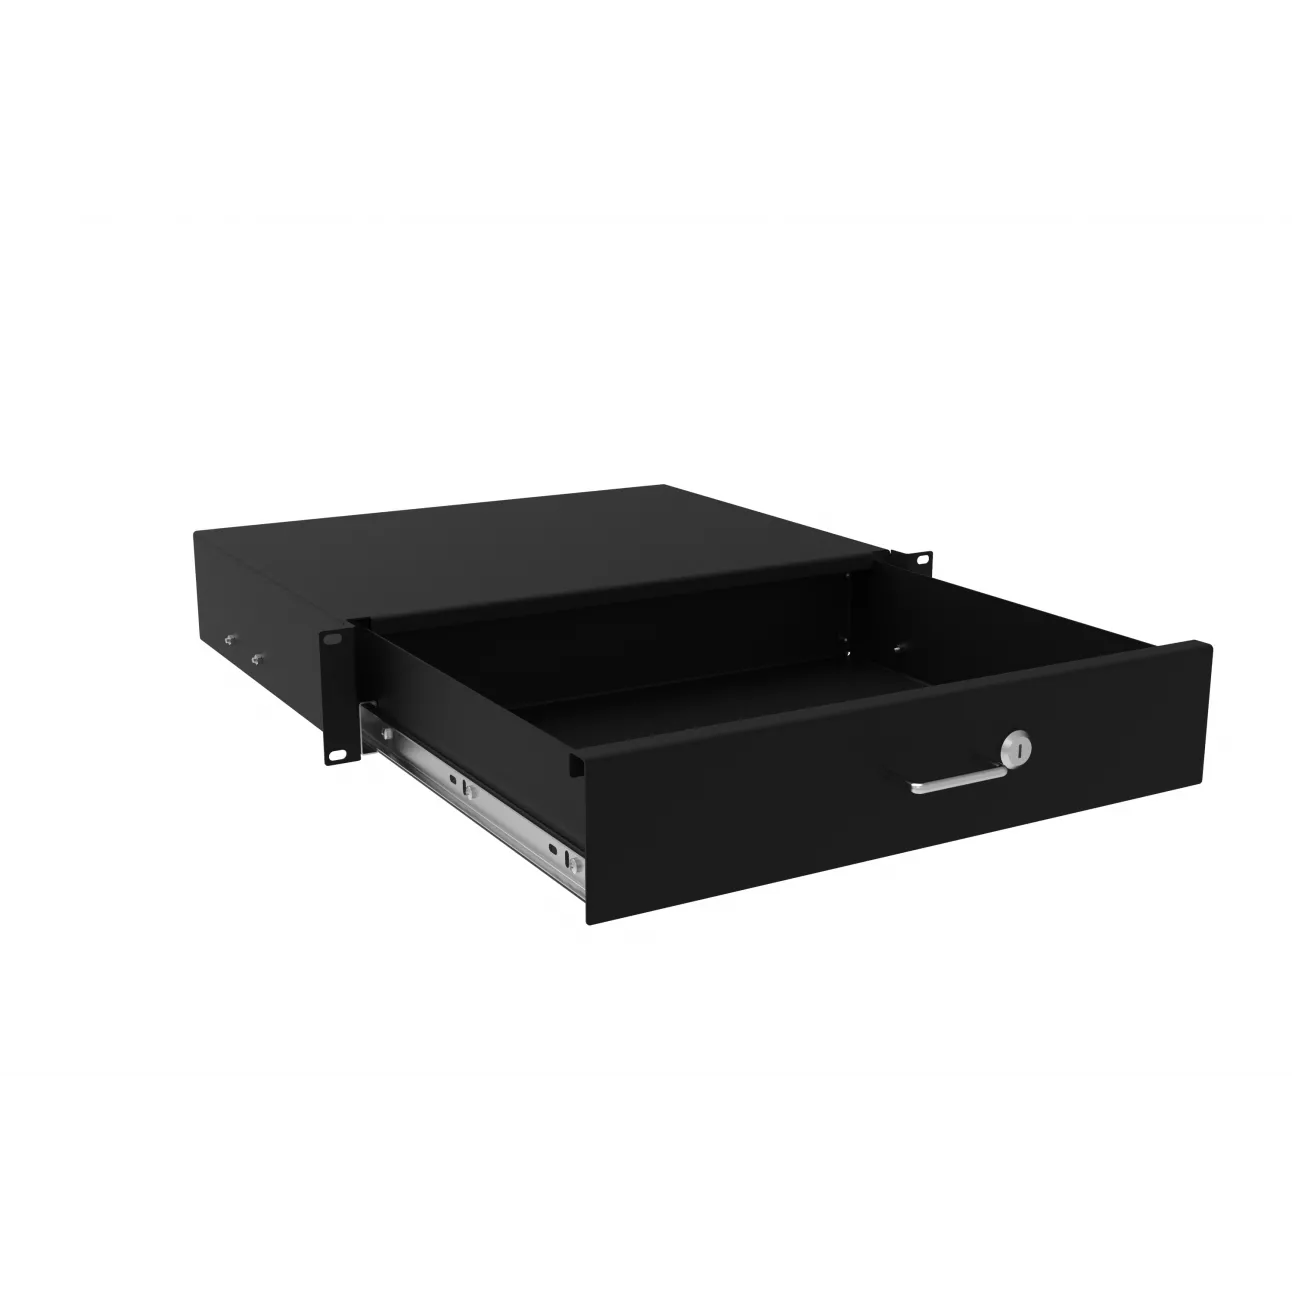 Выдвижной ящик для документов глубиной 355мм, высота 2U, цвет-черный (SNR-CASE-355-2U-B)